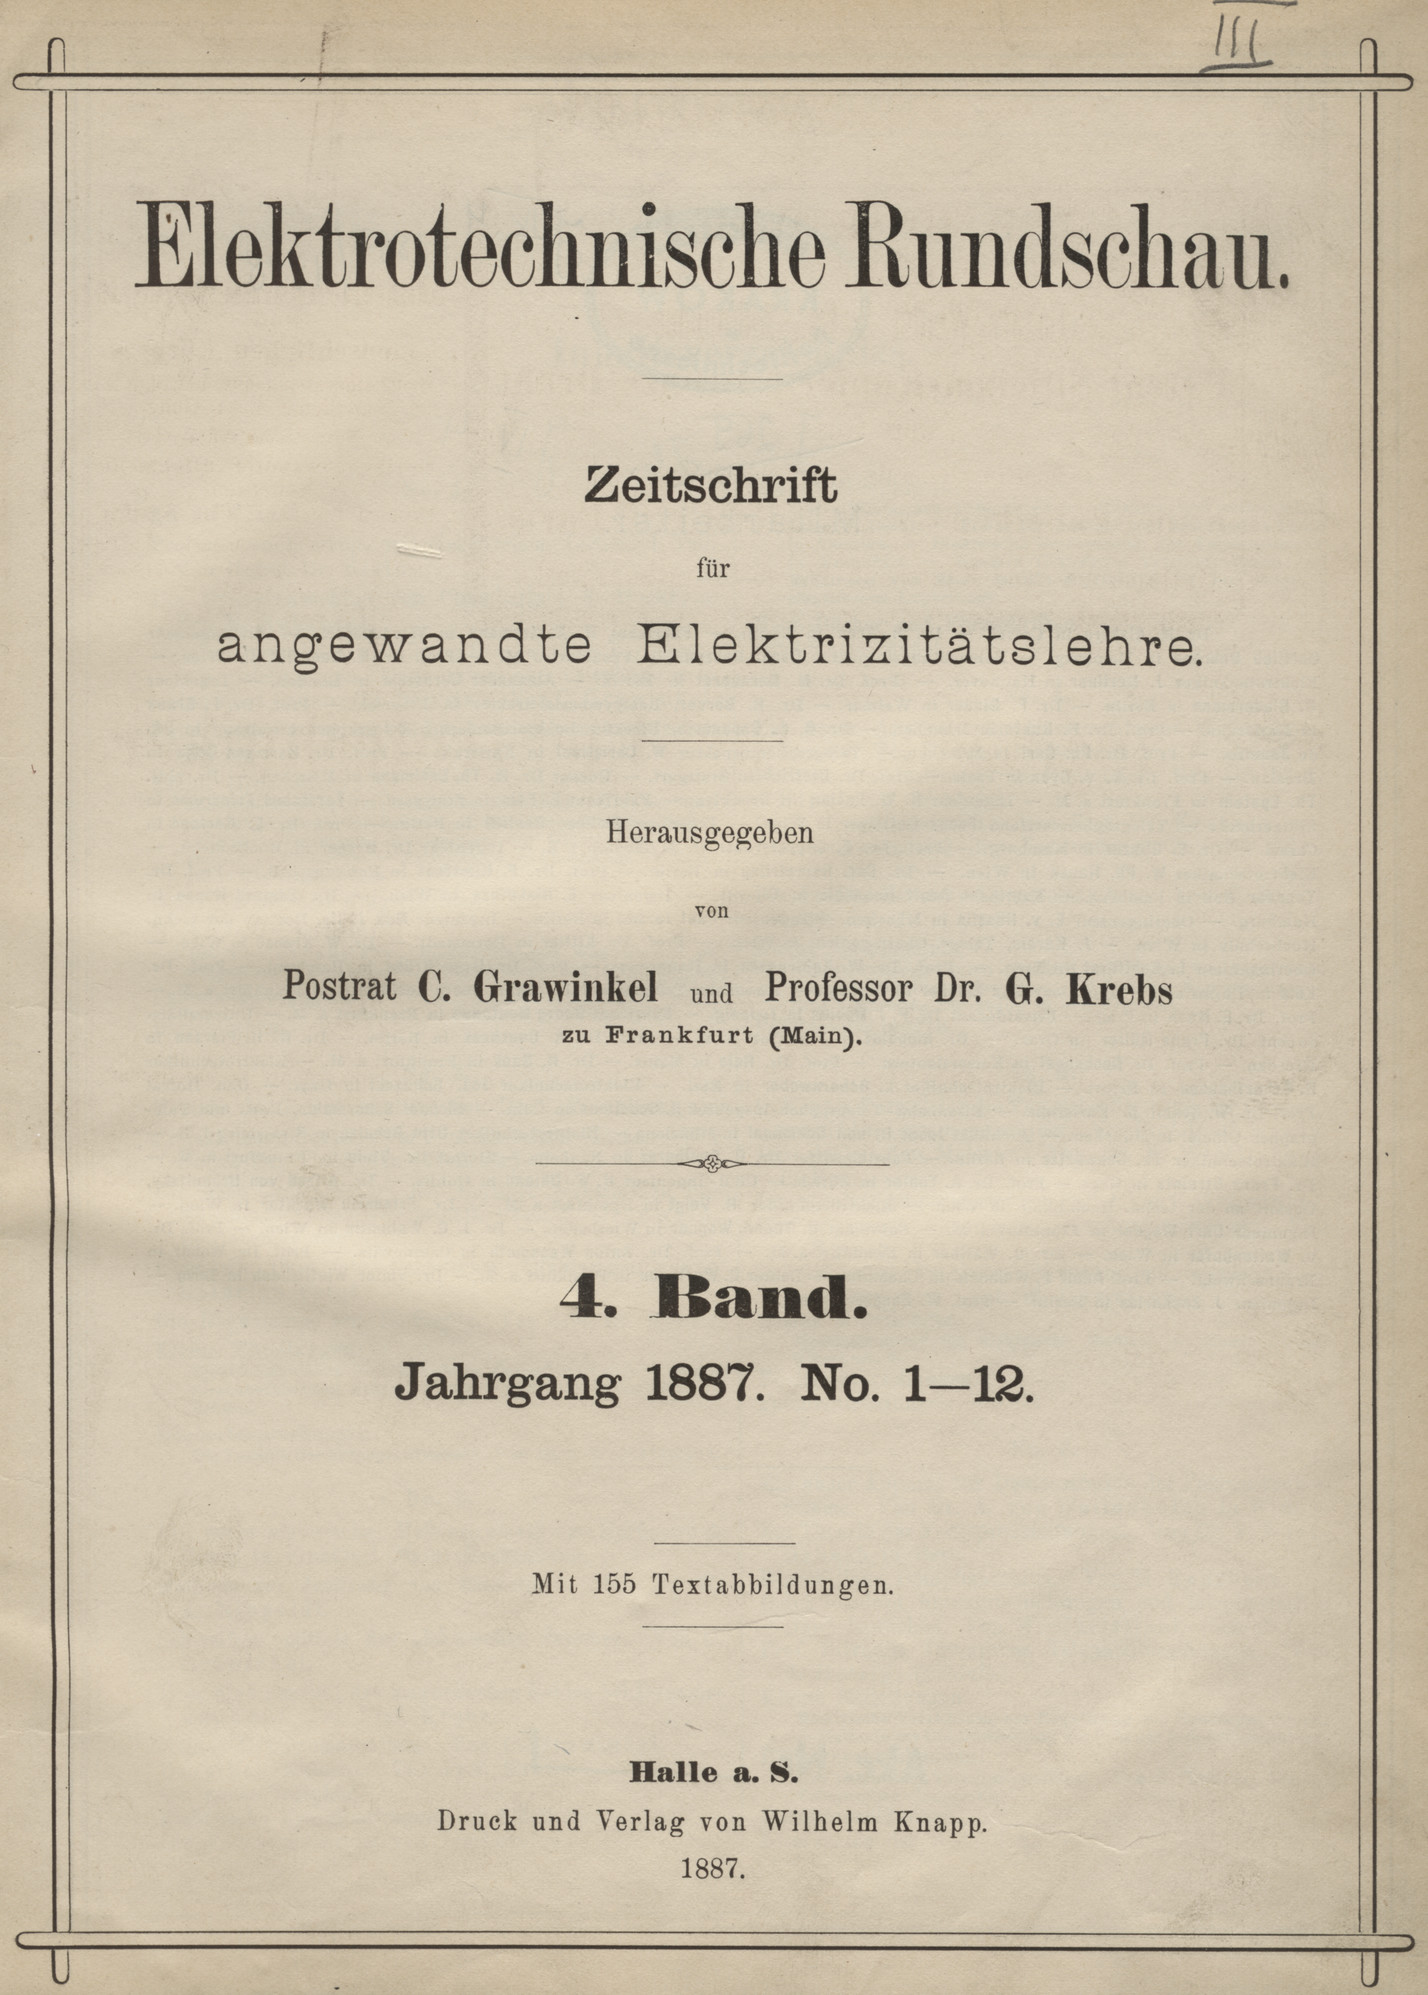 Elektrotechnische Rundschau : Zeitschrift für angewandte Elektrizitätslehre, 1887, Index